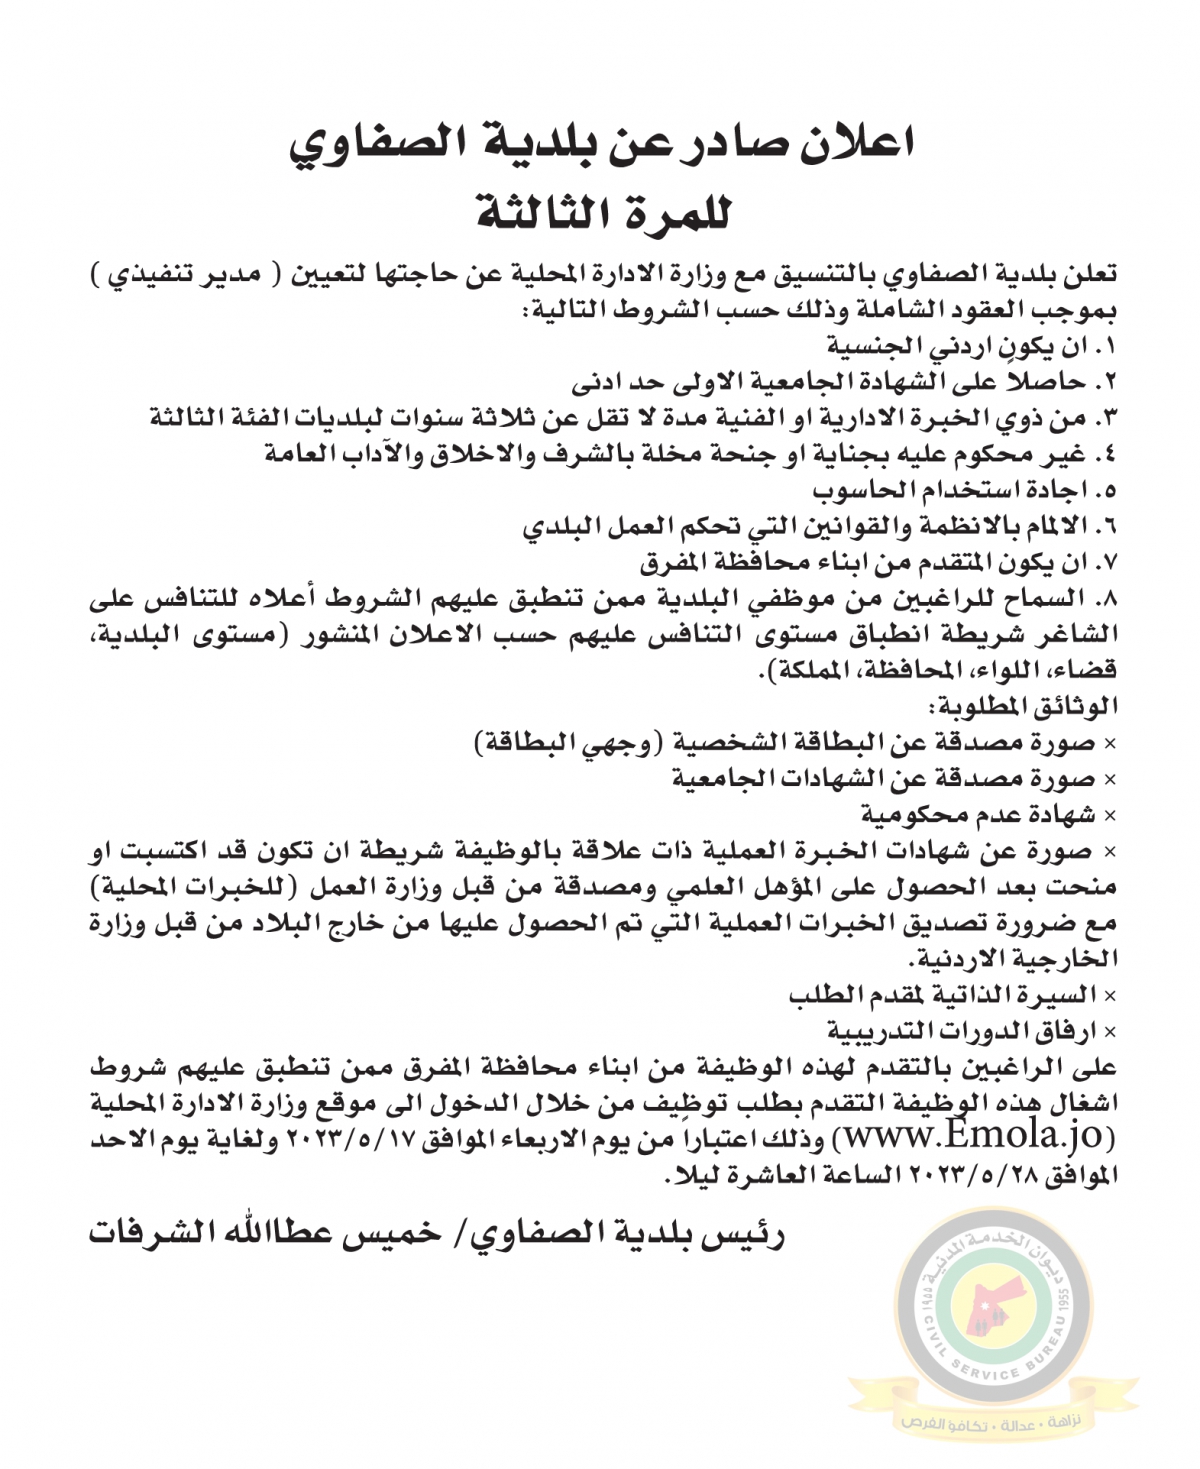 اعلان وظائف شاغرة مدير تنفيذي بموجب العقود الشاملة صادرعن بلدية الصفاوي